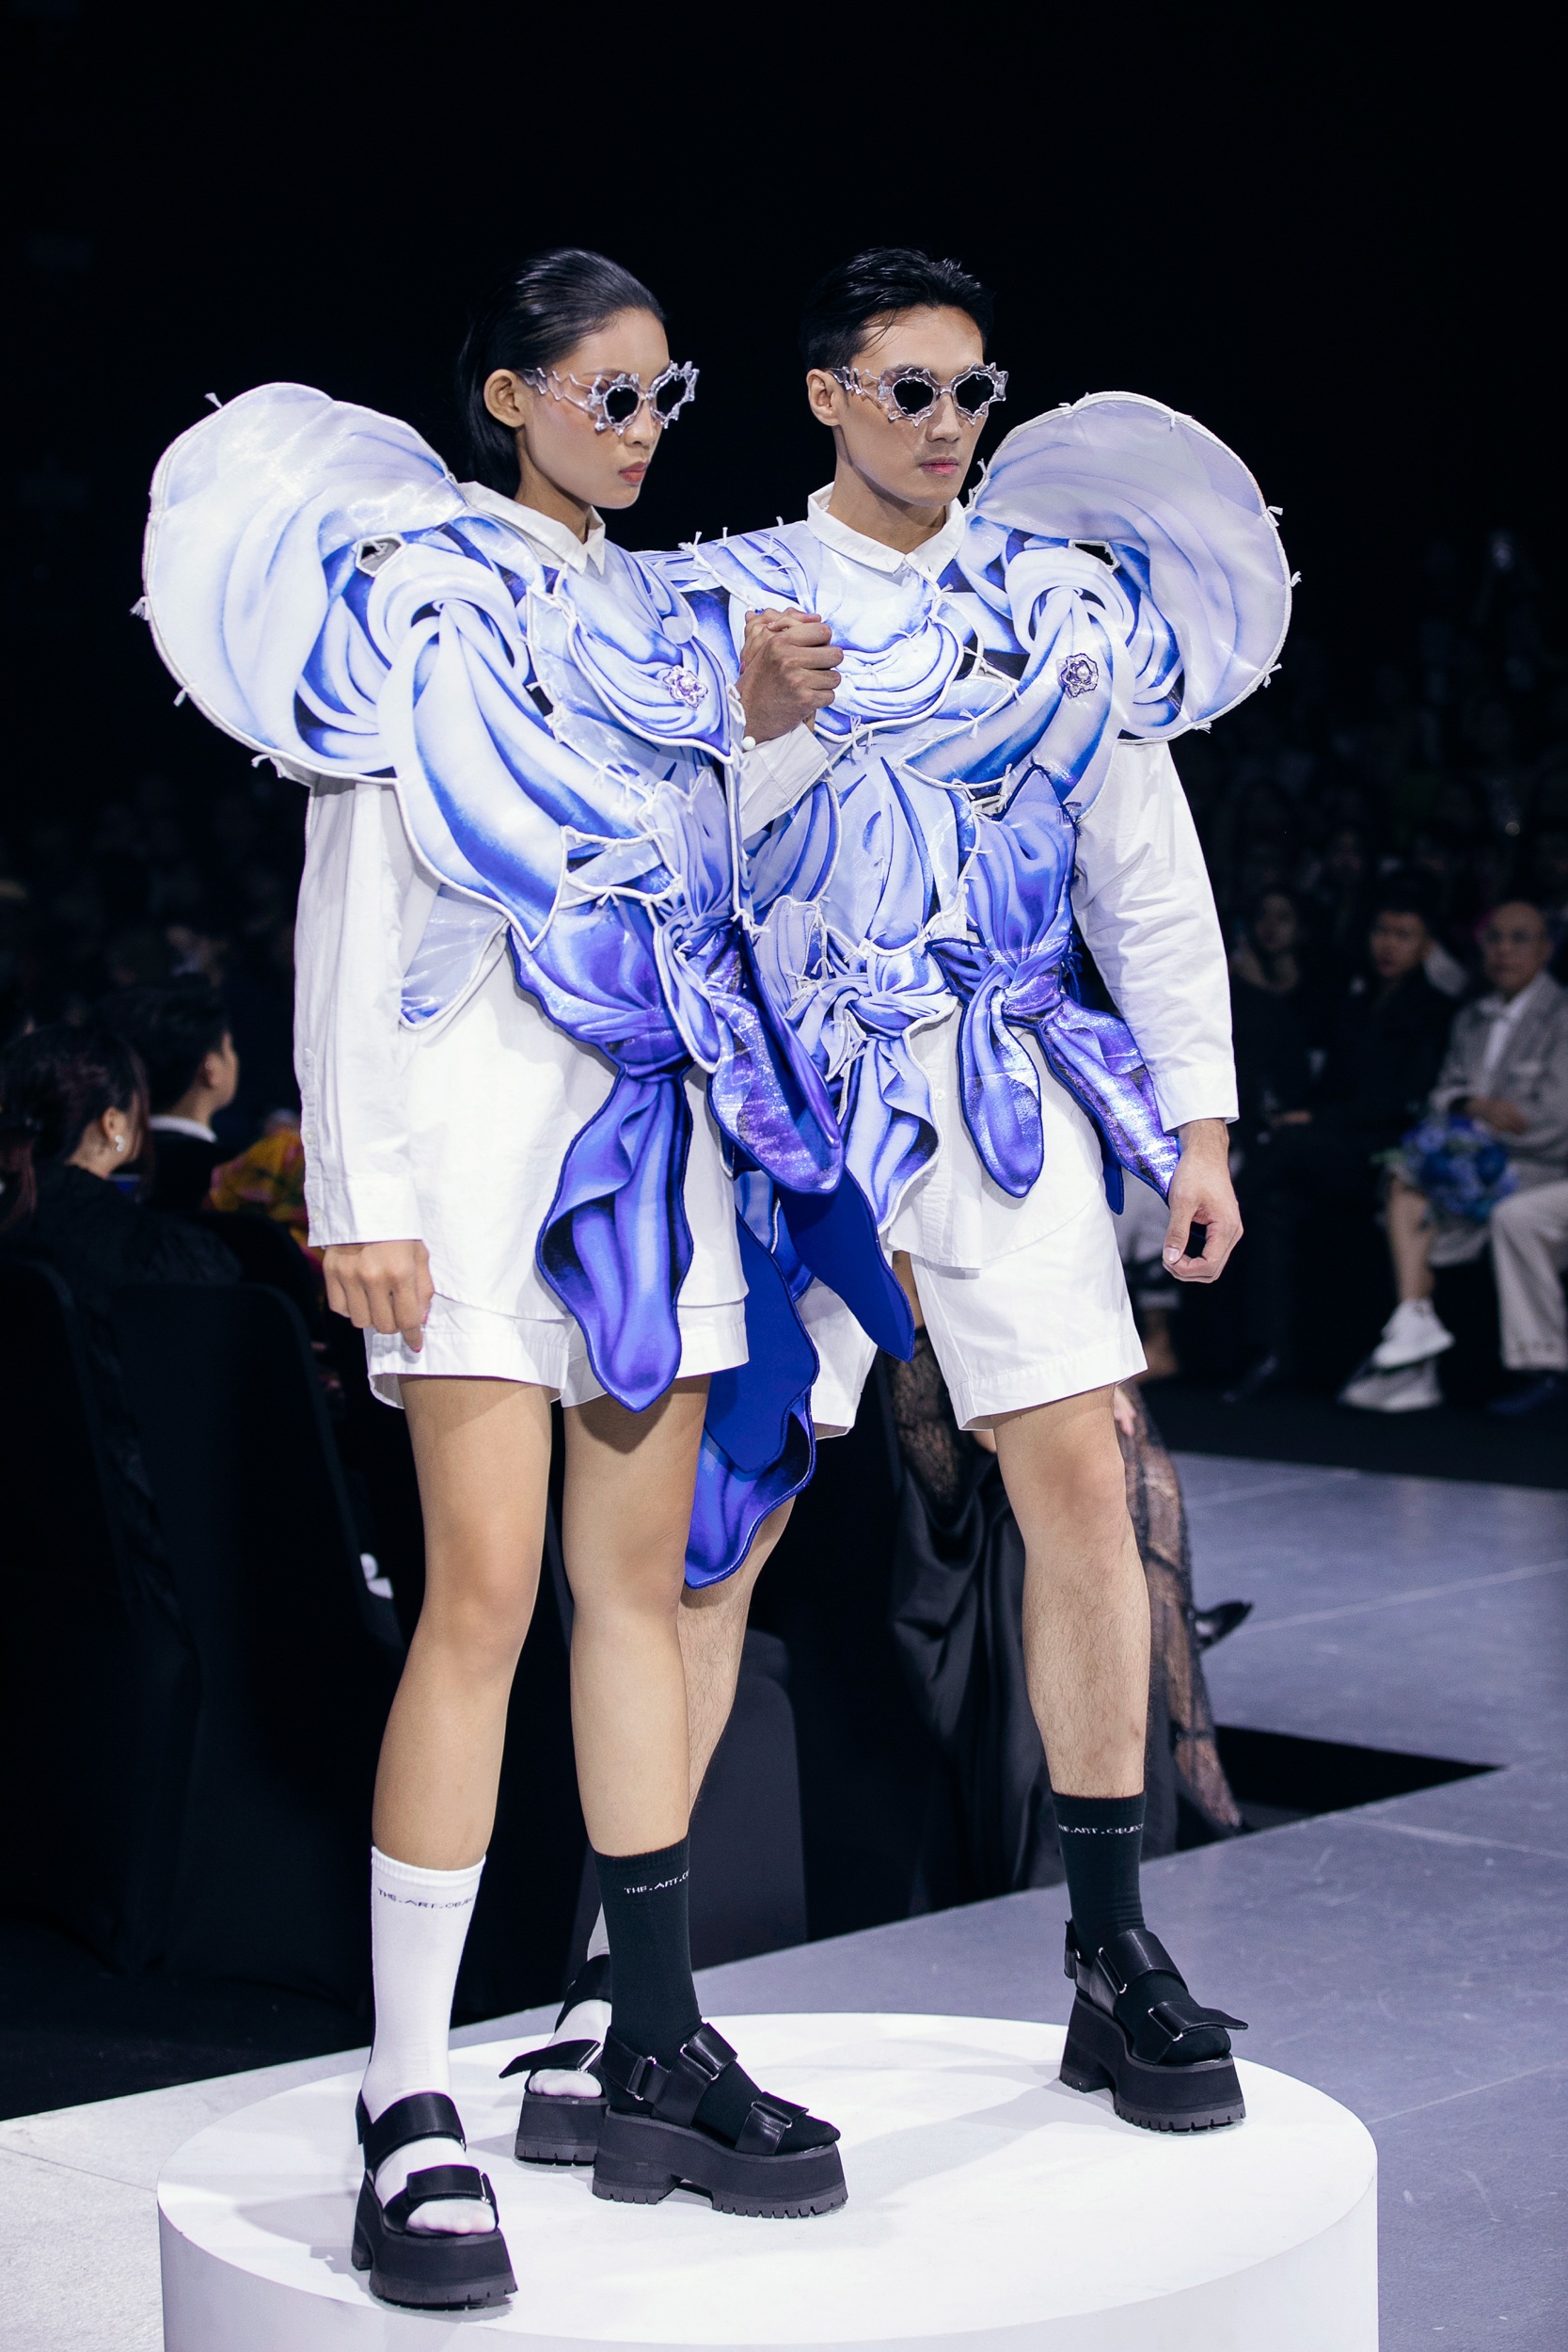 Bộ đôi Quán quân The Face Vietnam Mạc Trung Kiên và Huỳnh Tú Anh có màn catwalk đôi ấn tượng. Cả hai tạo dáng "dính vào nhau", nhận tràng vỗ tay từ khán giả (Ảnh: Ban Tổ chức).